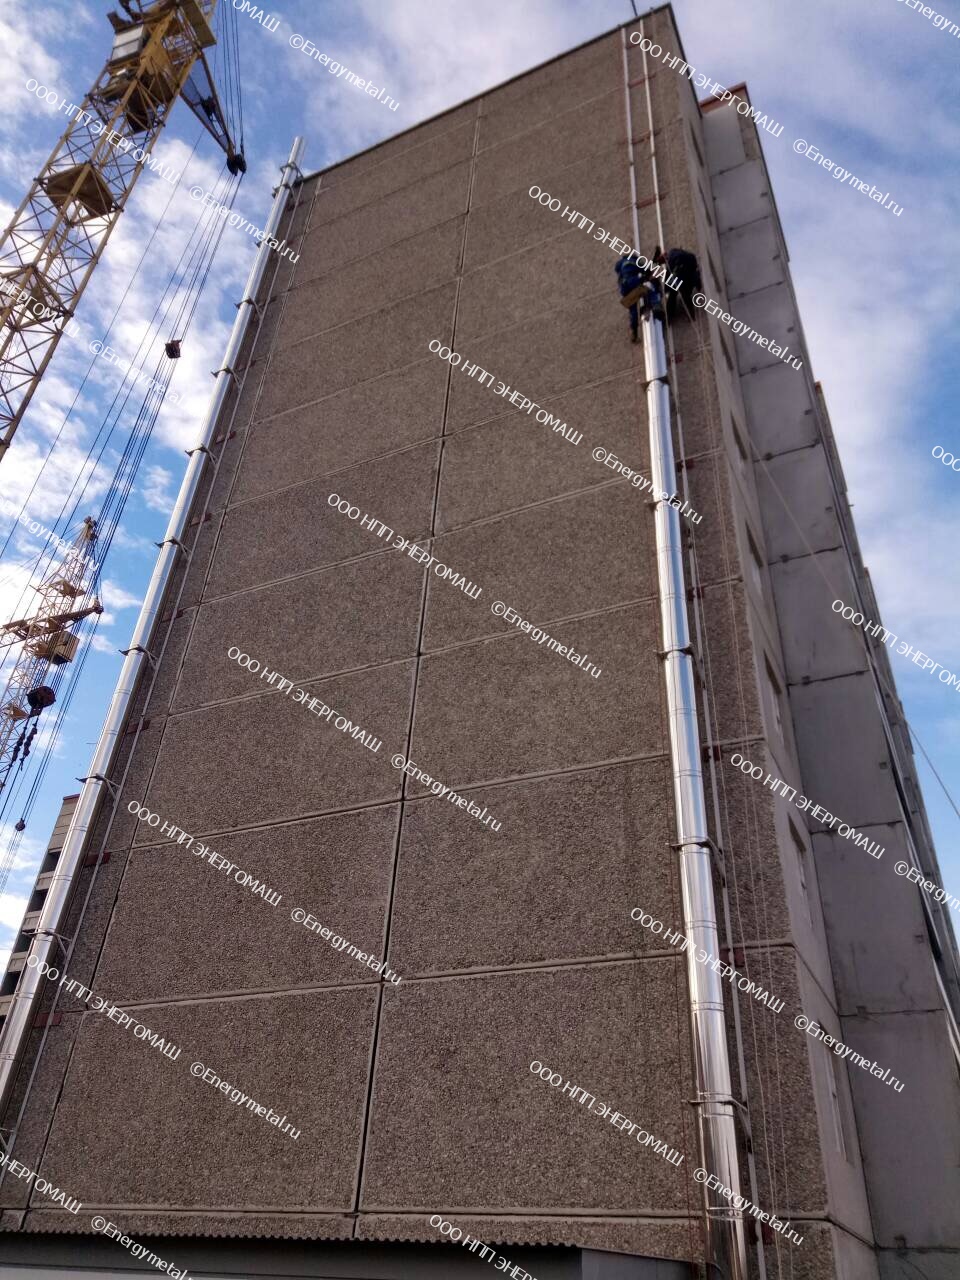 Фасадные дымовые трубы высотой 35 метров 2 шт. г. Пермь РФ